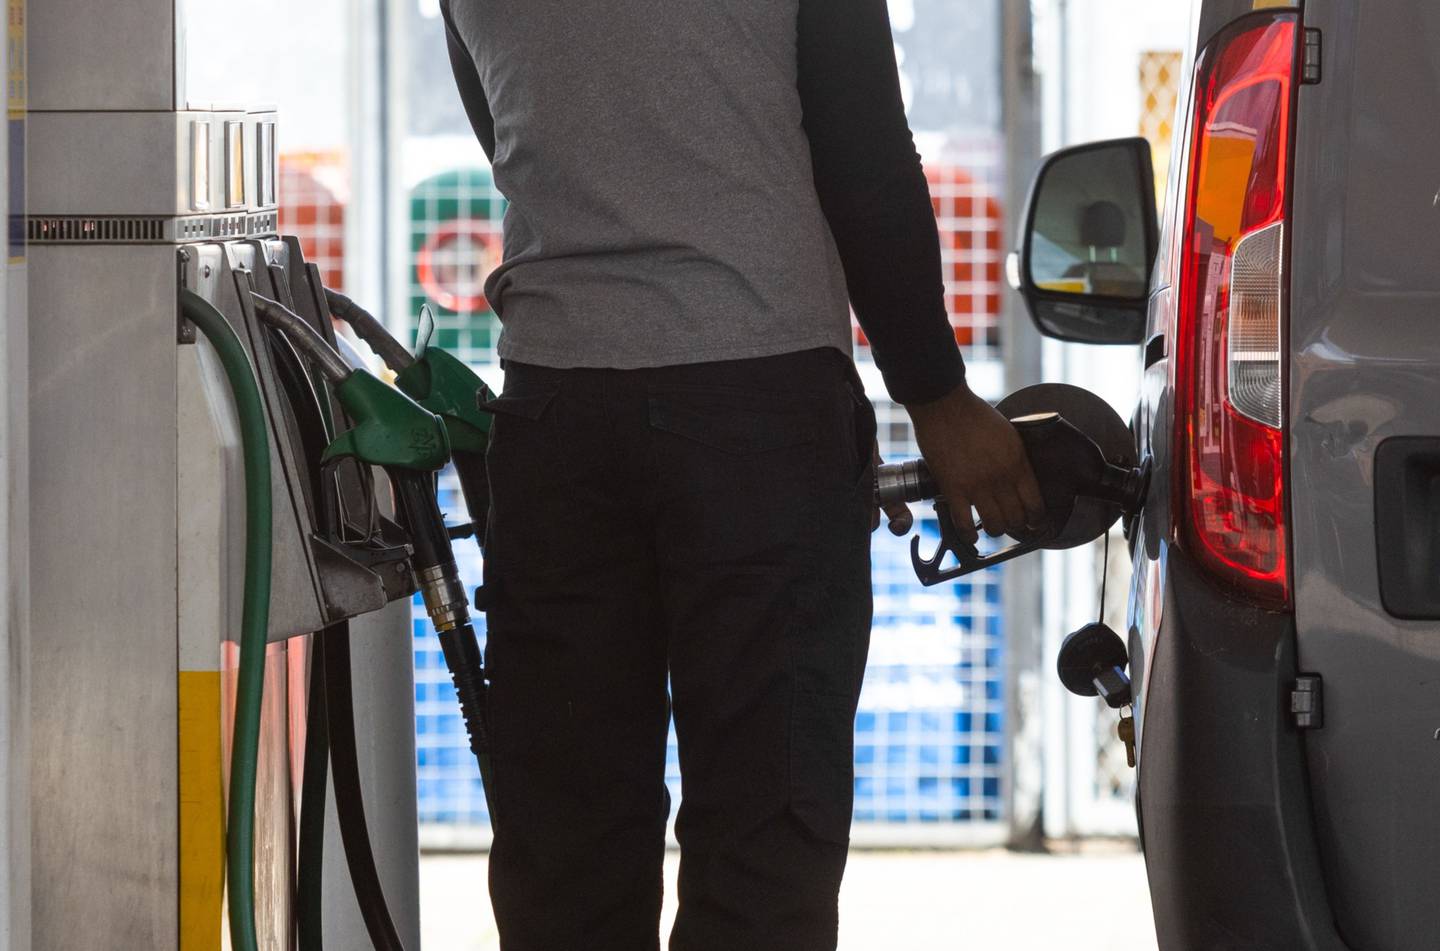 El ministro de Hacienda, José Antonio Ocampo, anunció que en octubre comenzarán las alzas graduales en el precio de la gasolina.